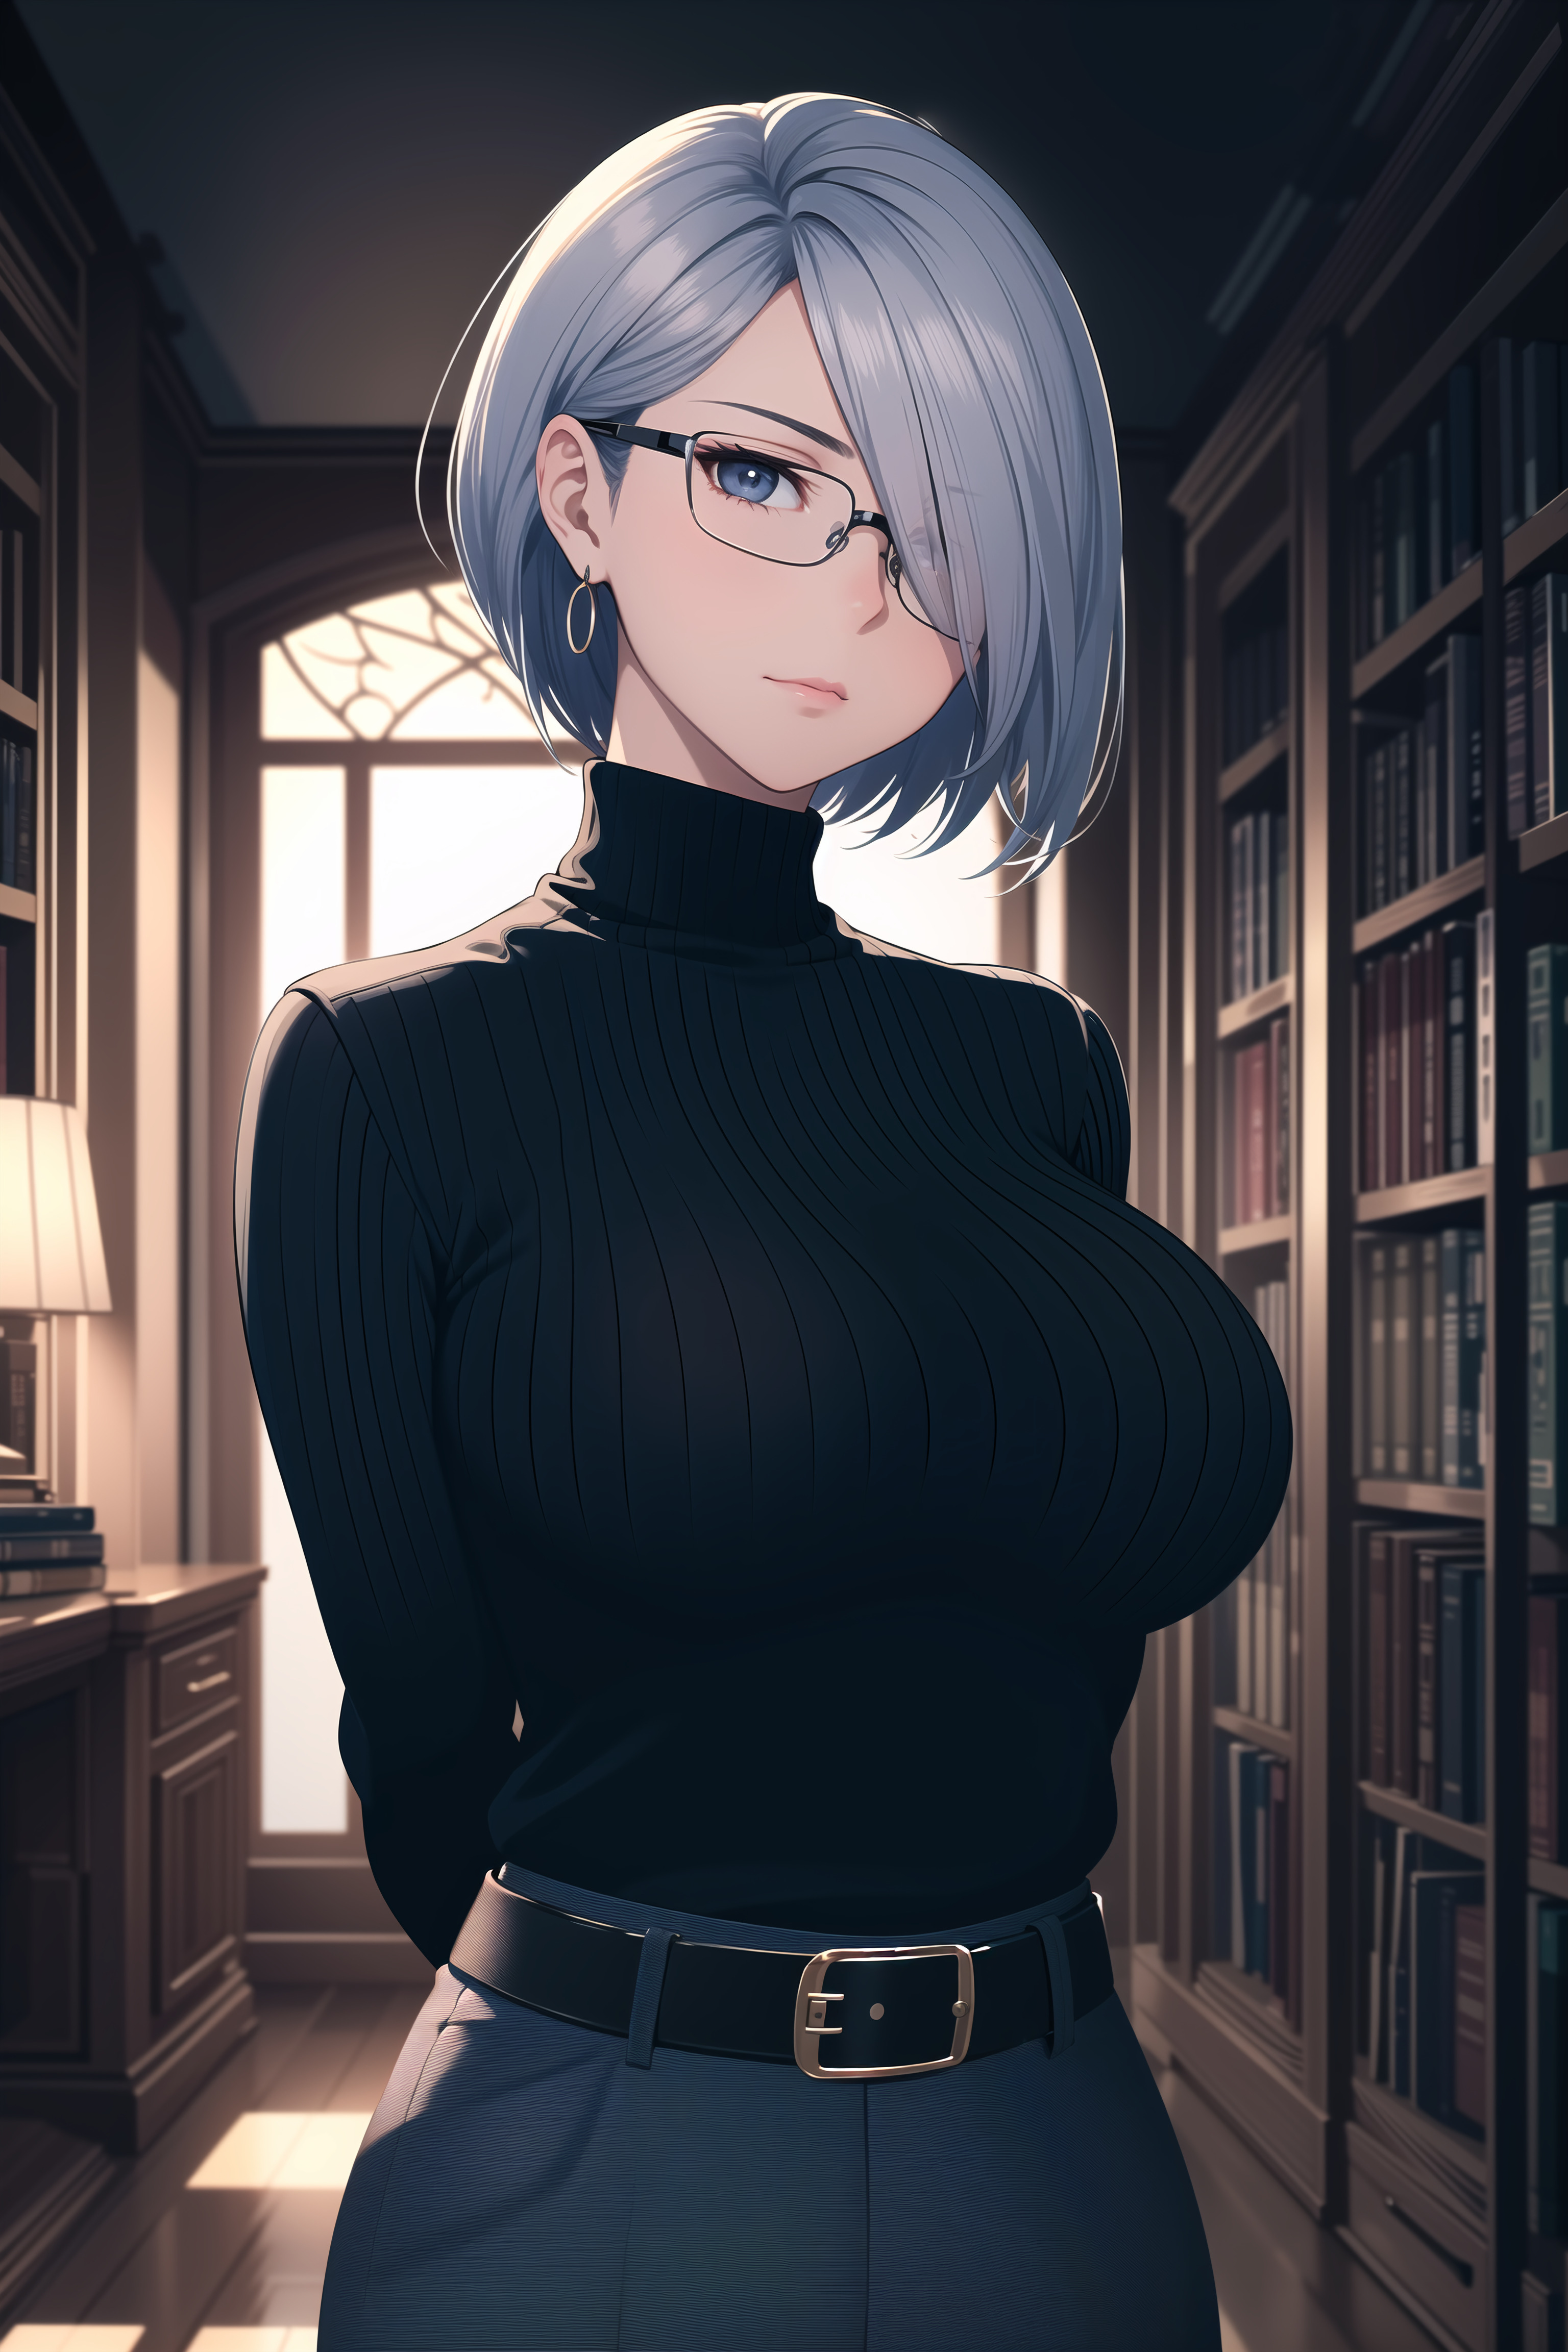 Image: Girl, hair, glasses, jacket, chest, office, books